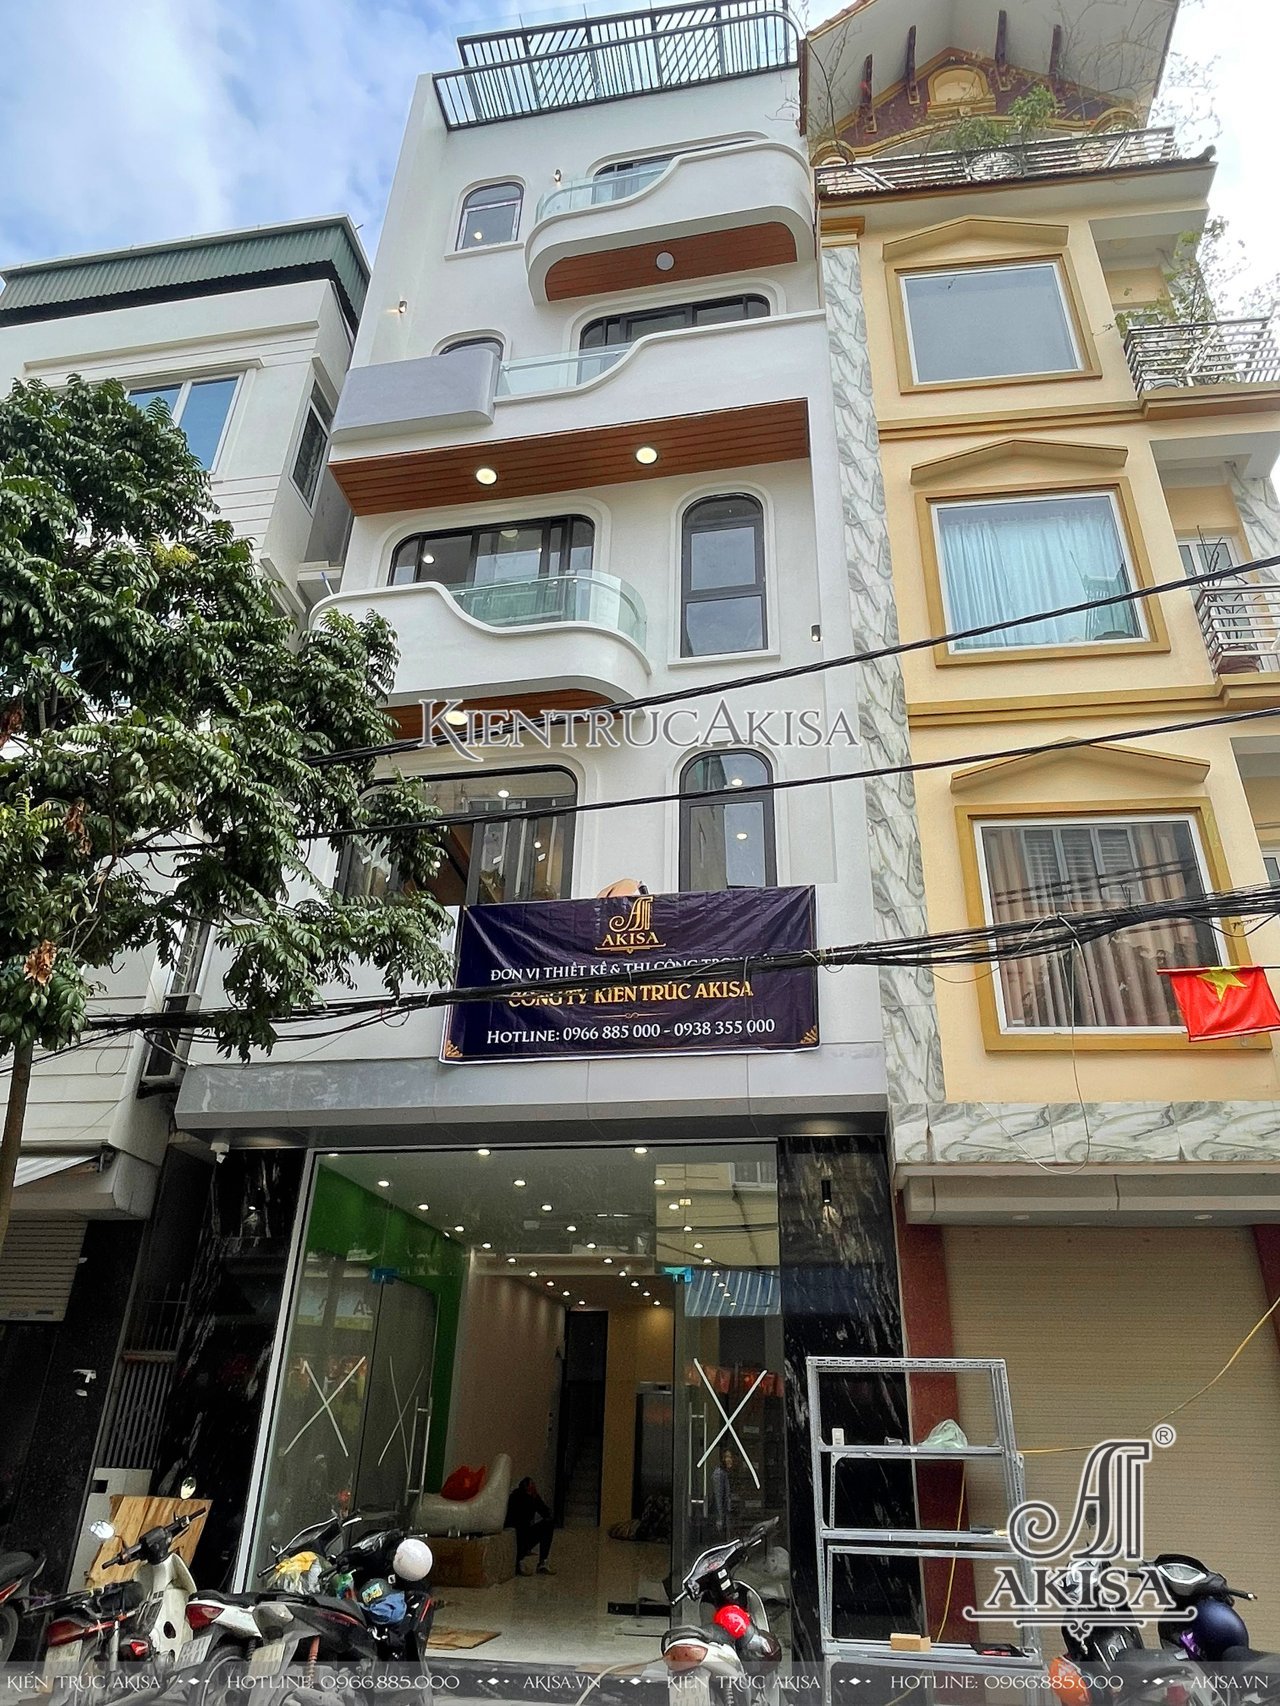 Thi công nội thất nhà phố 6 tầng tại Hà Nội (CĐT: bà Thanh) TC61901-NT